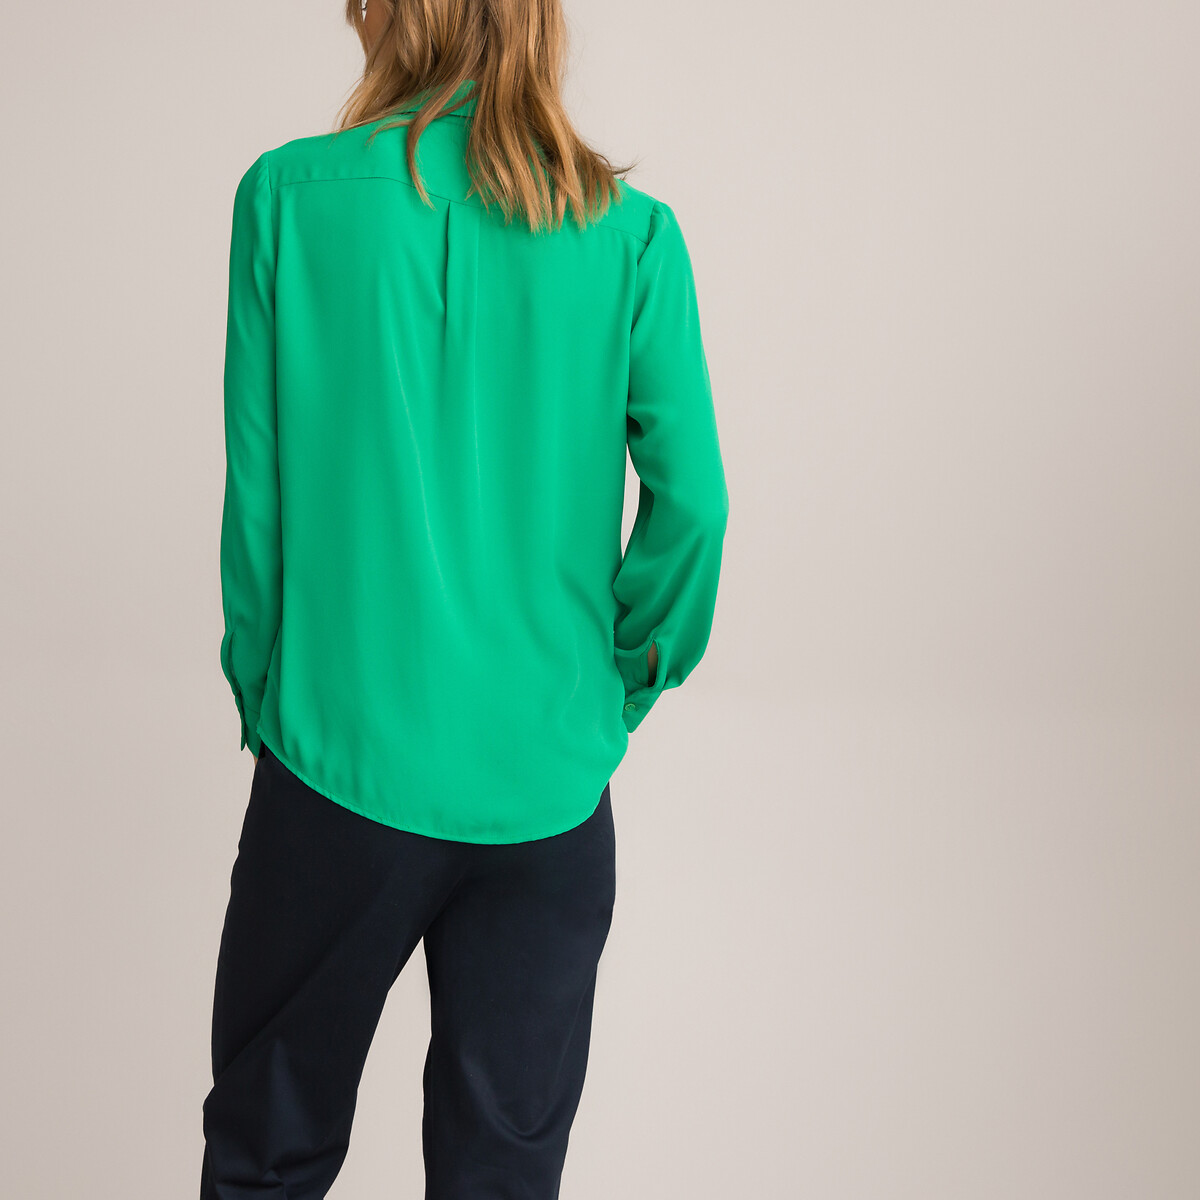 Блузка LA REDOUTE COLLECTIONS Блузка С длинными рукавами 38 (FR) - 44 (RUS) зеленый, размер 38 (FR) - 44 (RUS) Блузка С длинными рукавами 38 (FR) - 44 (RUS) зеленый - фото 4